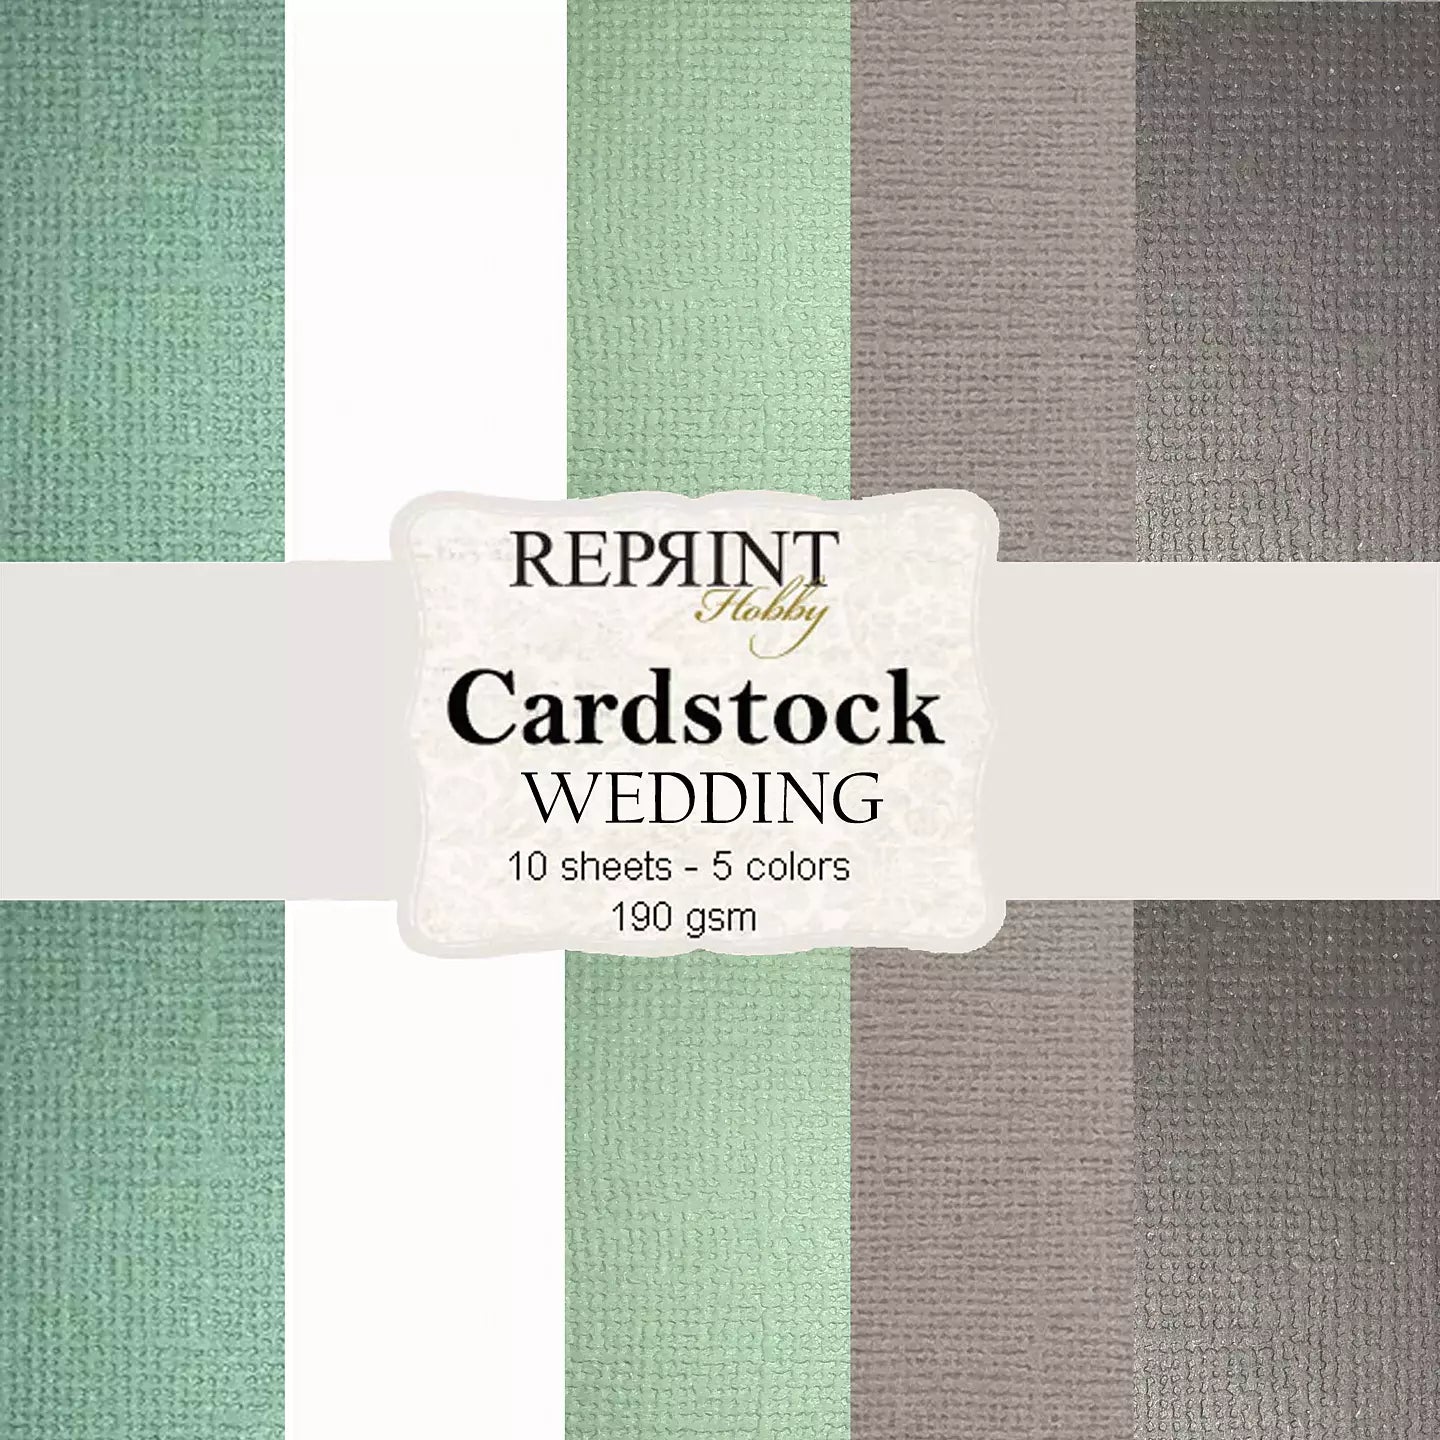 Reprint - cardstock / ensfarget arkpakke - Wedding CSP020